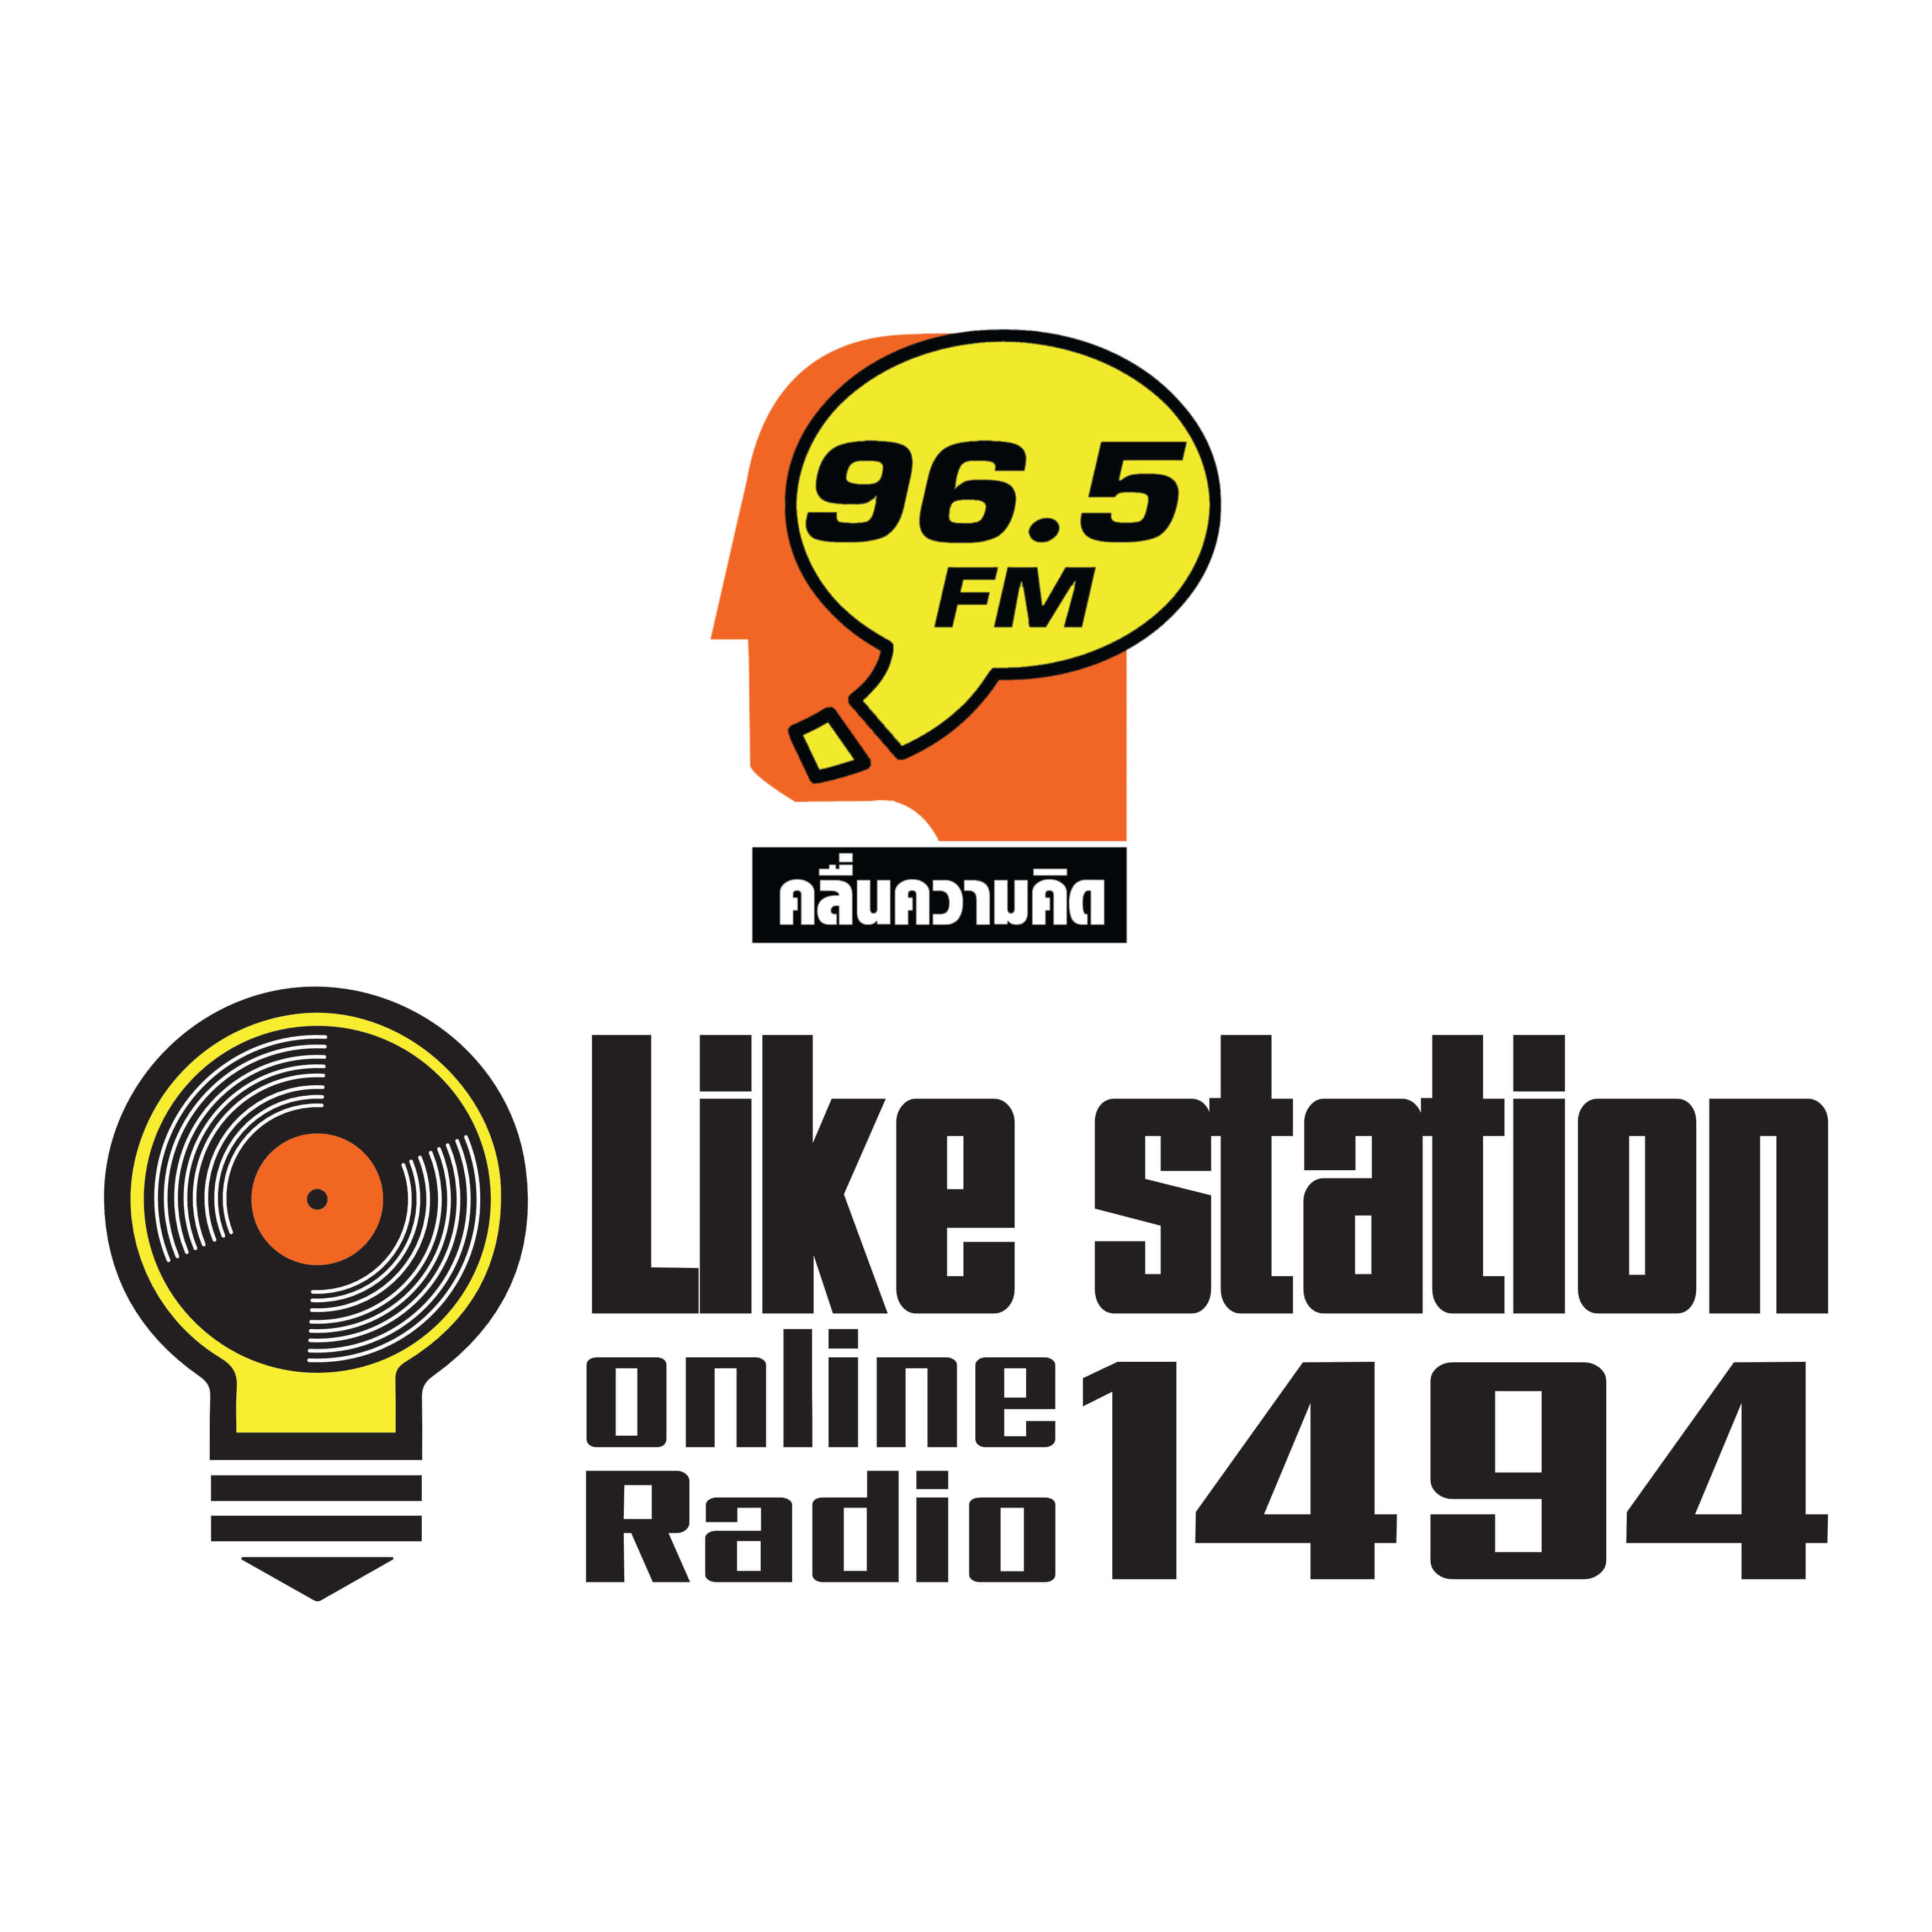 Thinking Radio 96.5 & Like Station 1494